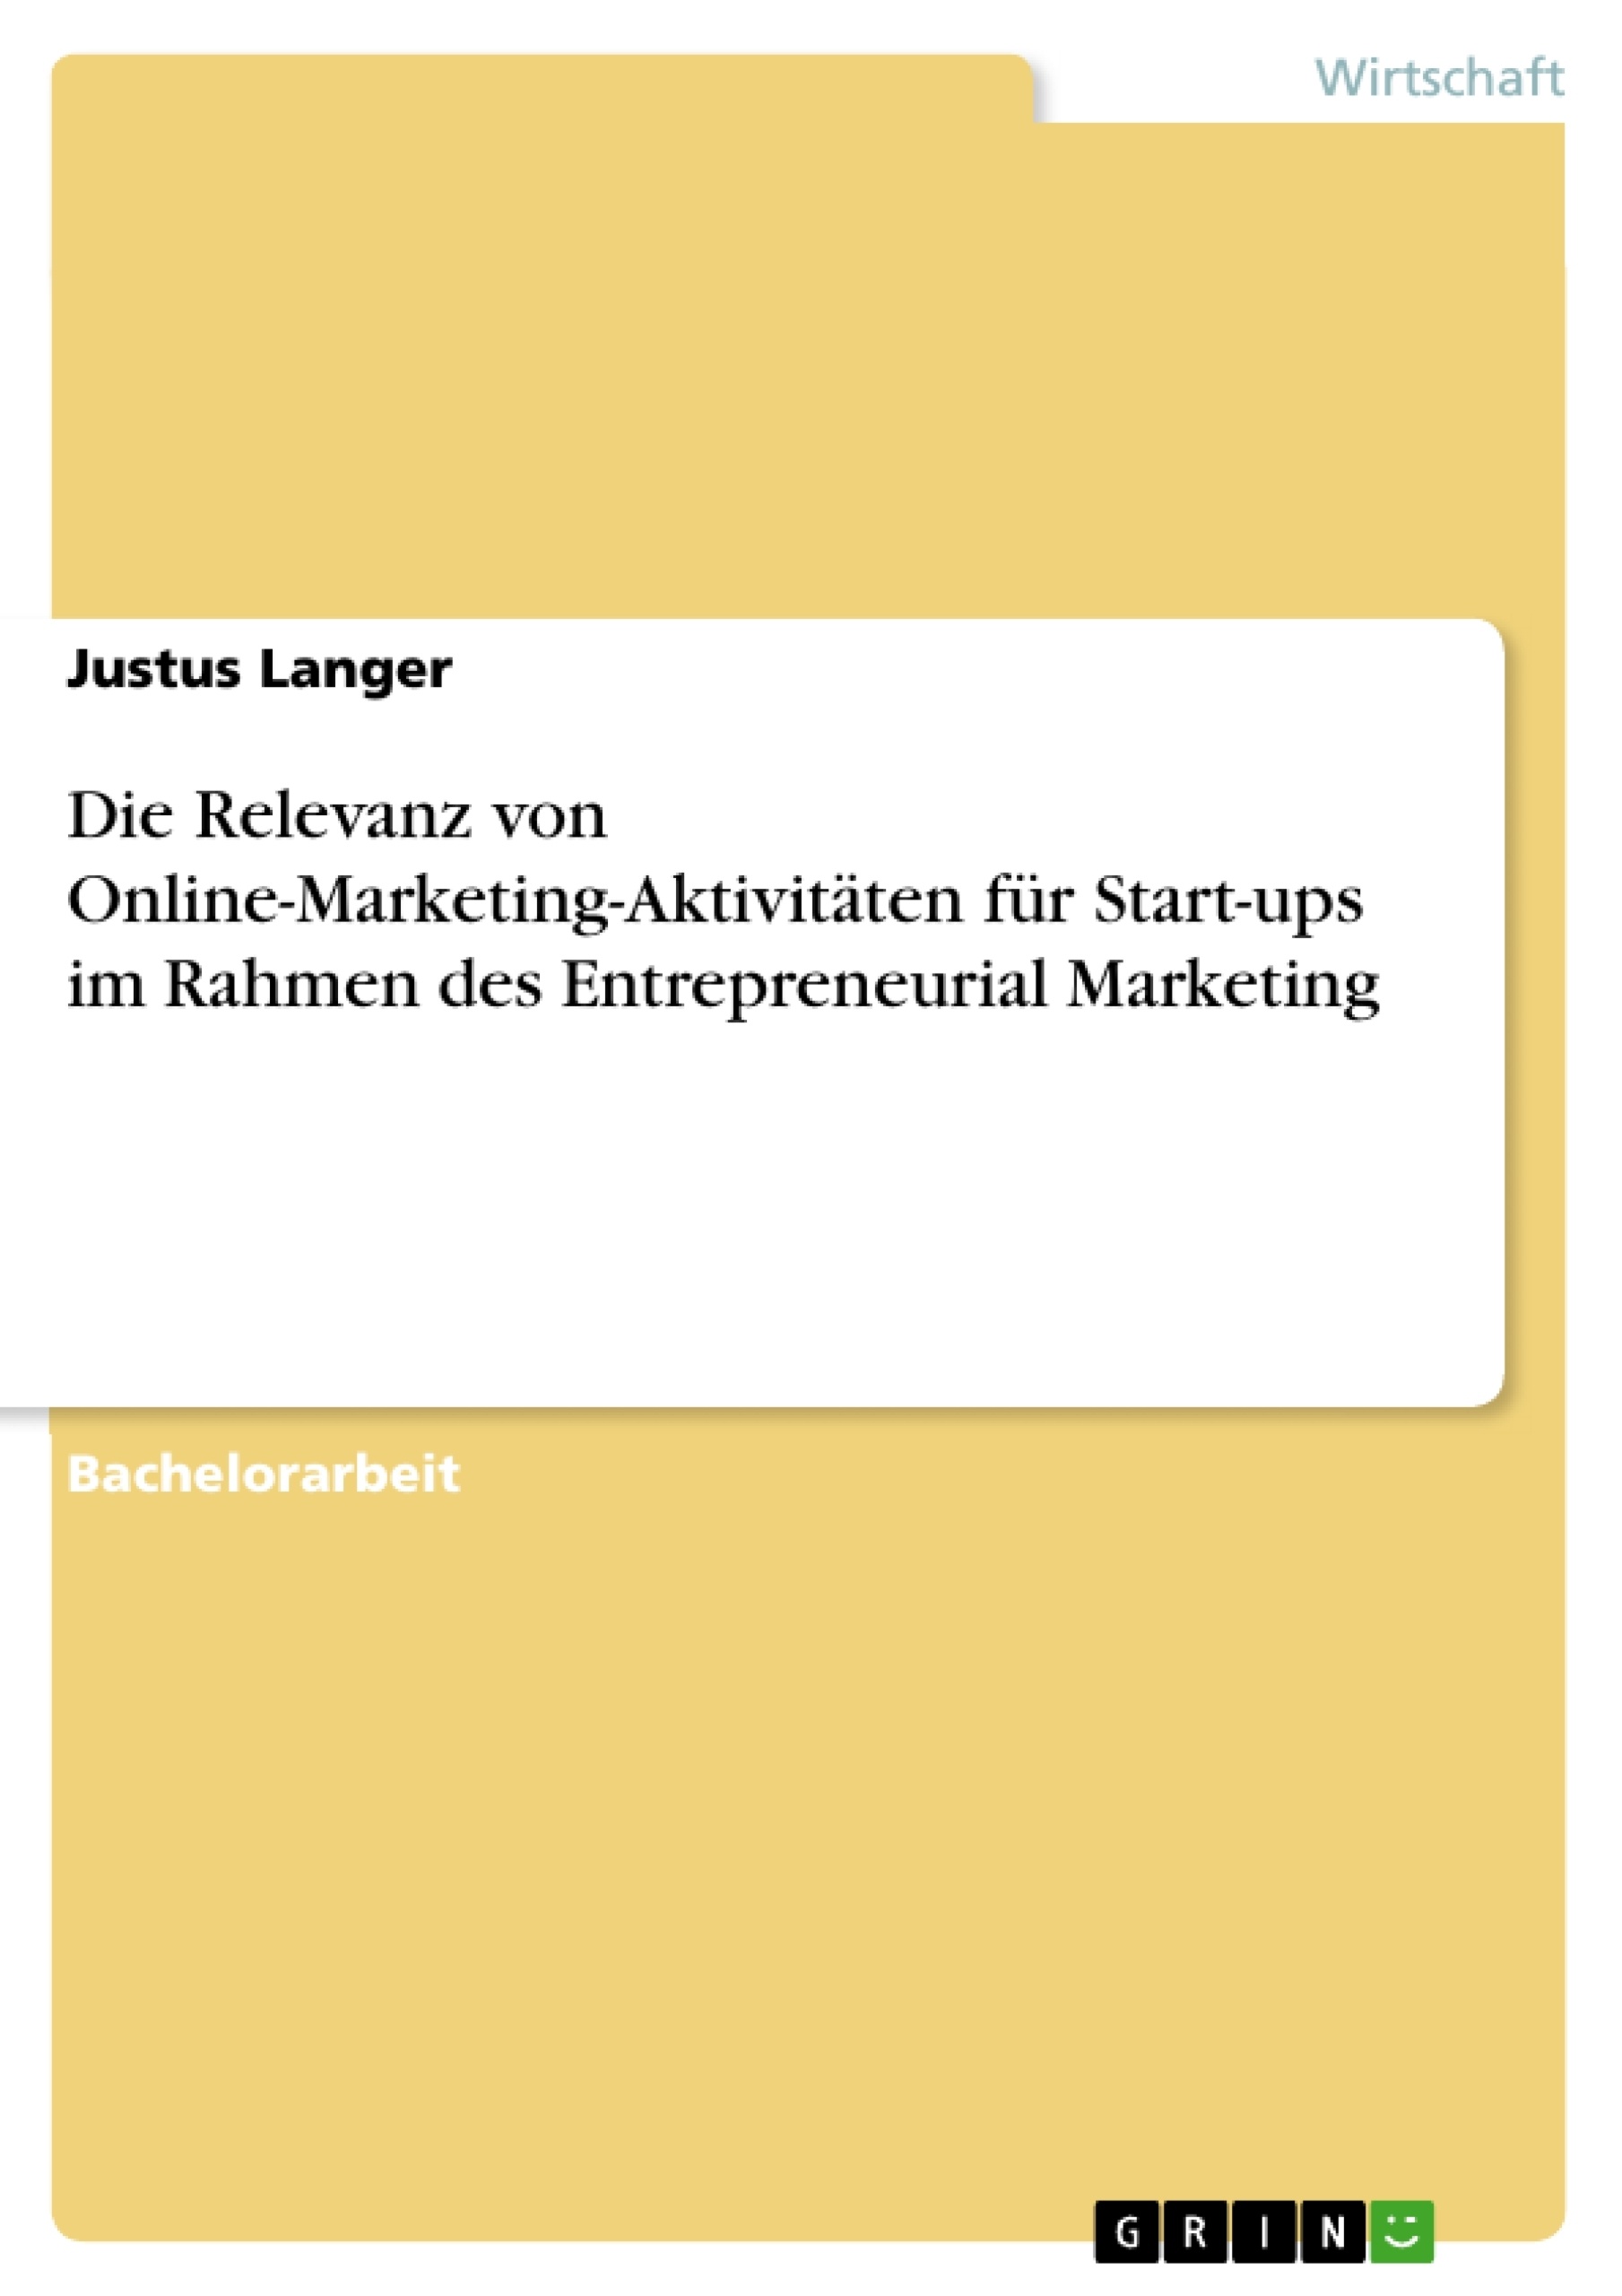 Title: Die Relevanz von Online-Marketing-Aktivitäten für Start-ups im Rahmen des Entrepreneurial Marketing